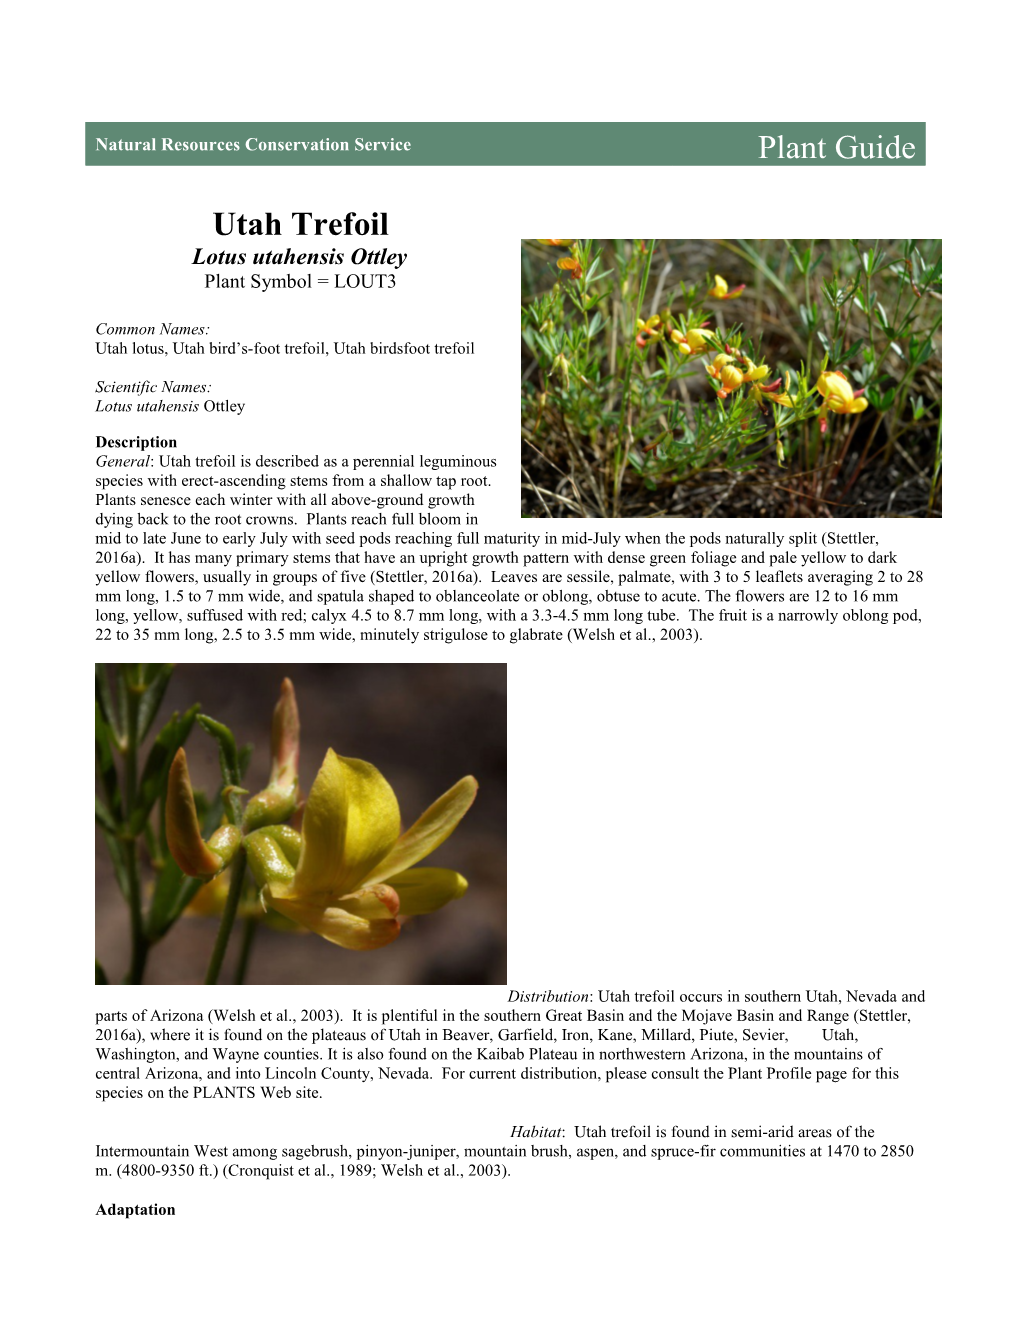 Plant Guide for Utah Trefoil (Lotus Utahensis)